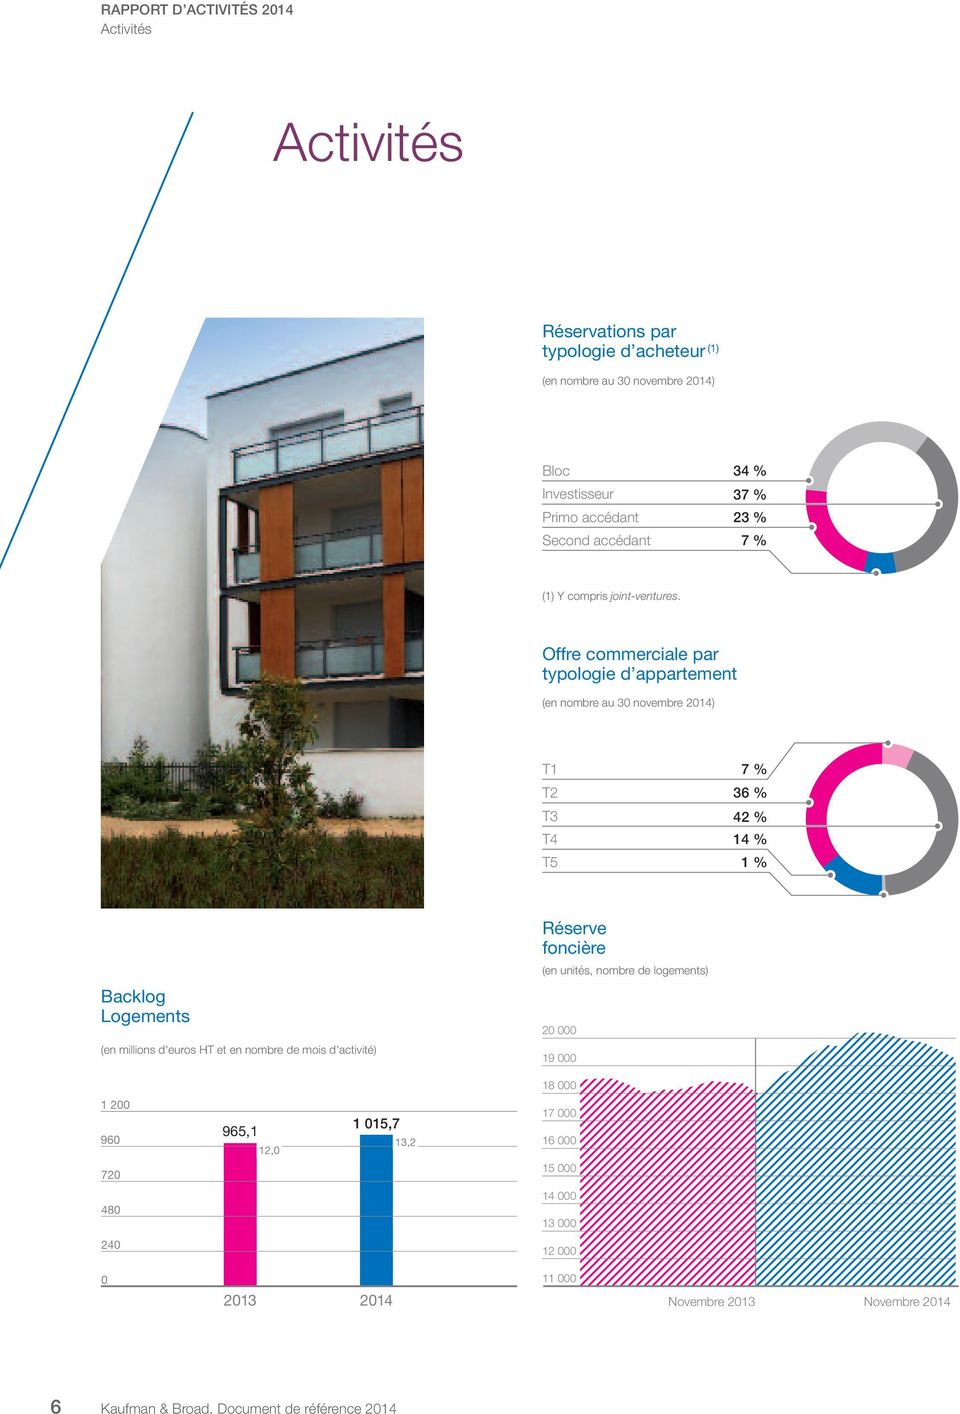 Offre commerciale par typologie d appartement (en nombre au 30 novembre 2014) T1 T2 T3 T4 T5 7 % 36 % 42 % 14 % 1 % Backlog Logements (en millions d'euros HT et en